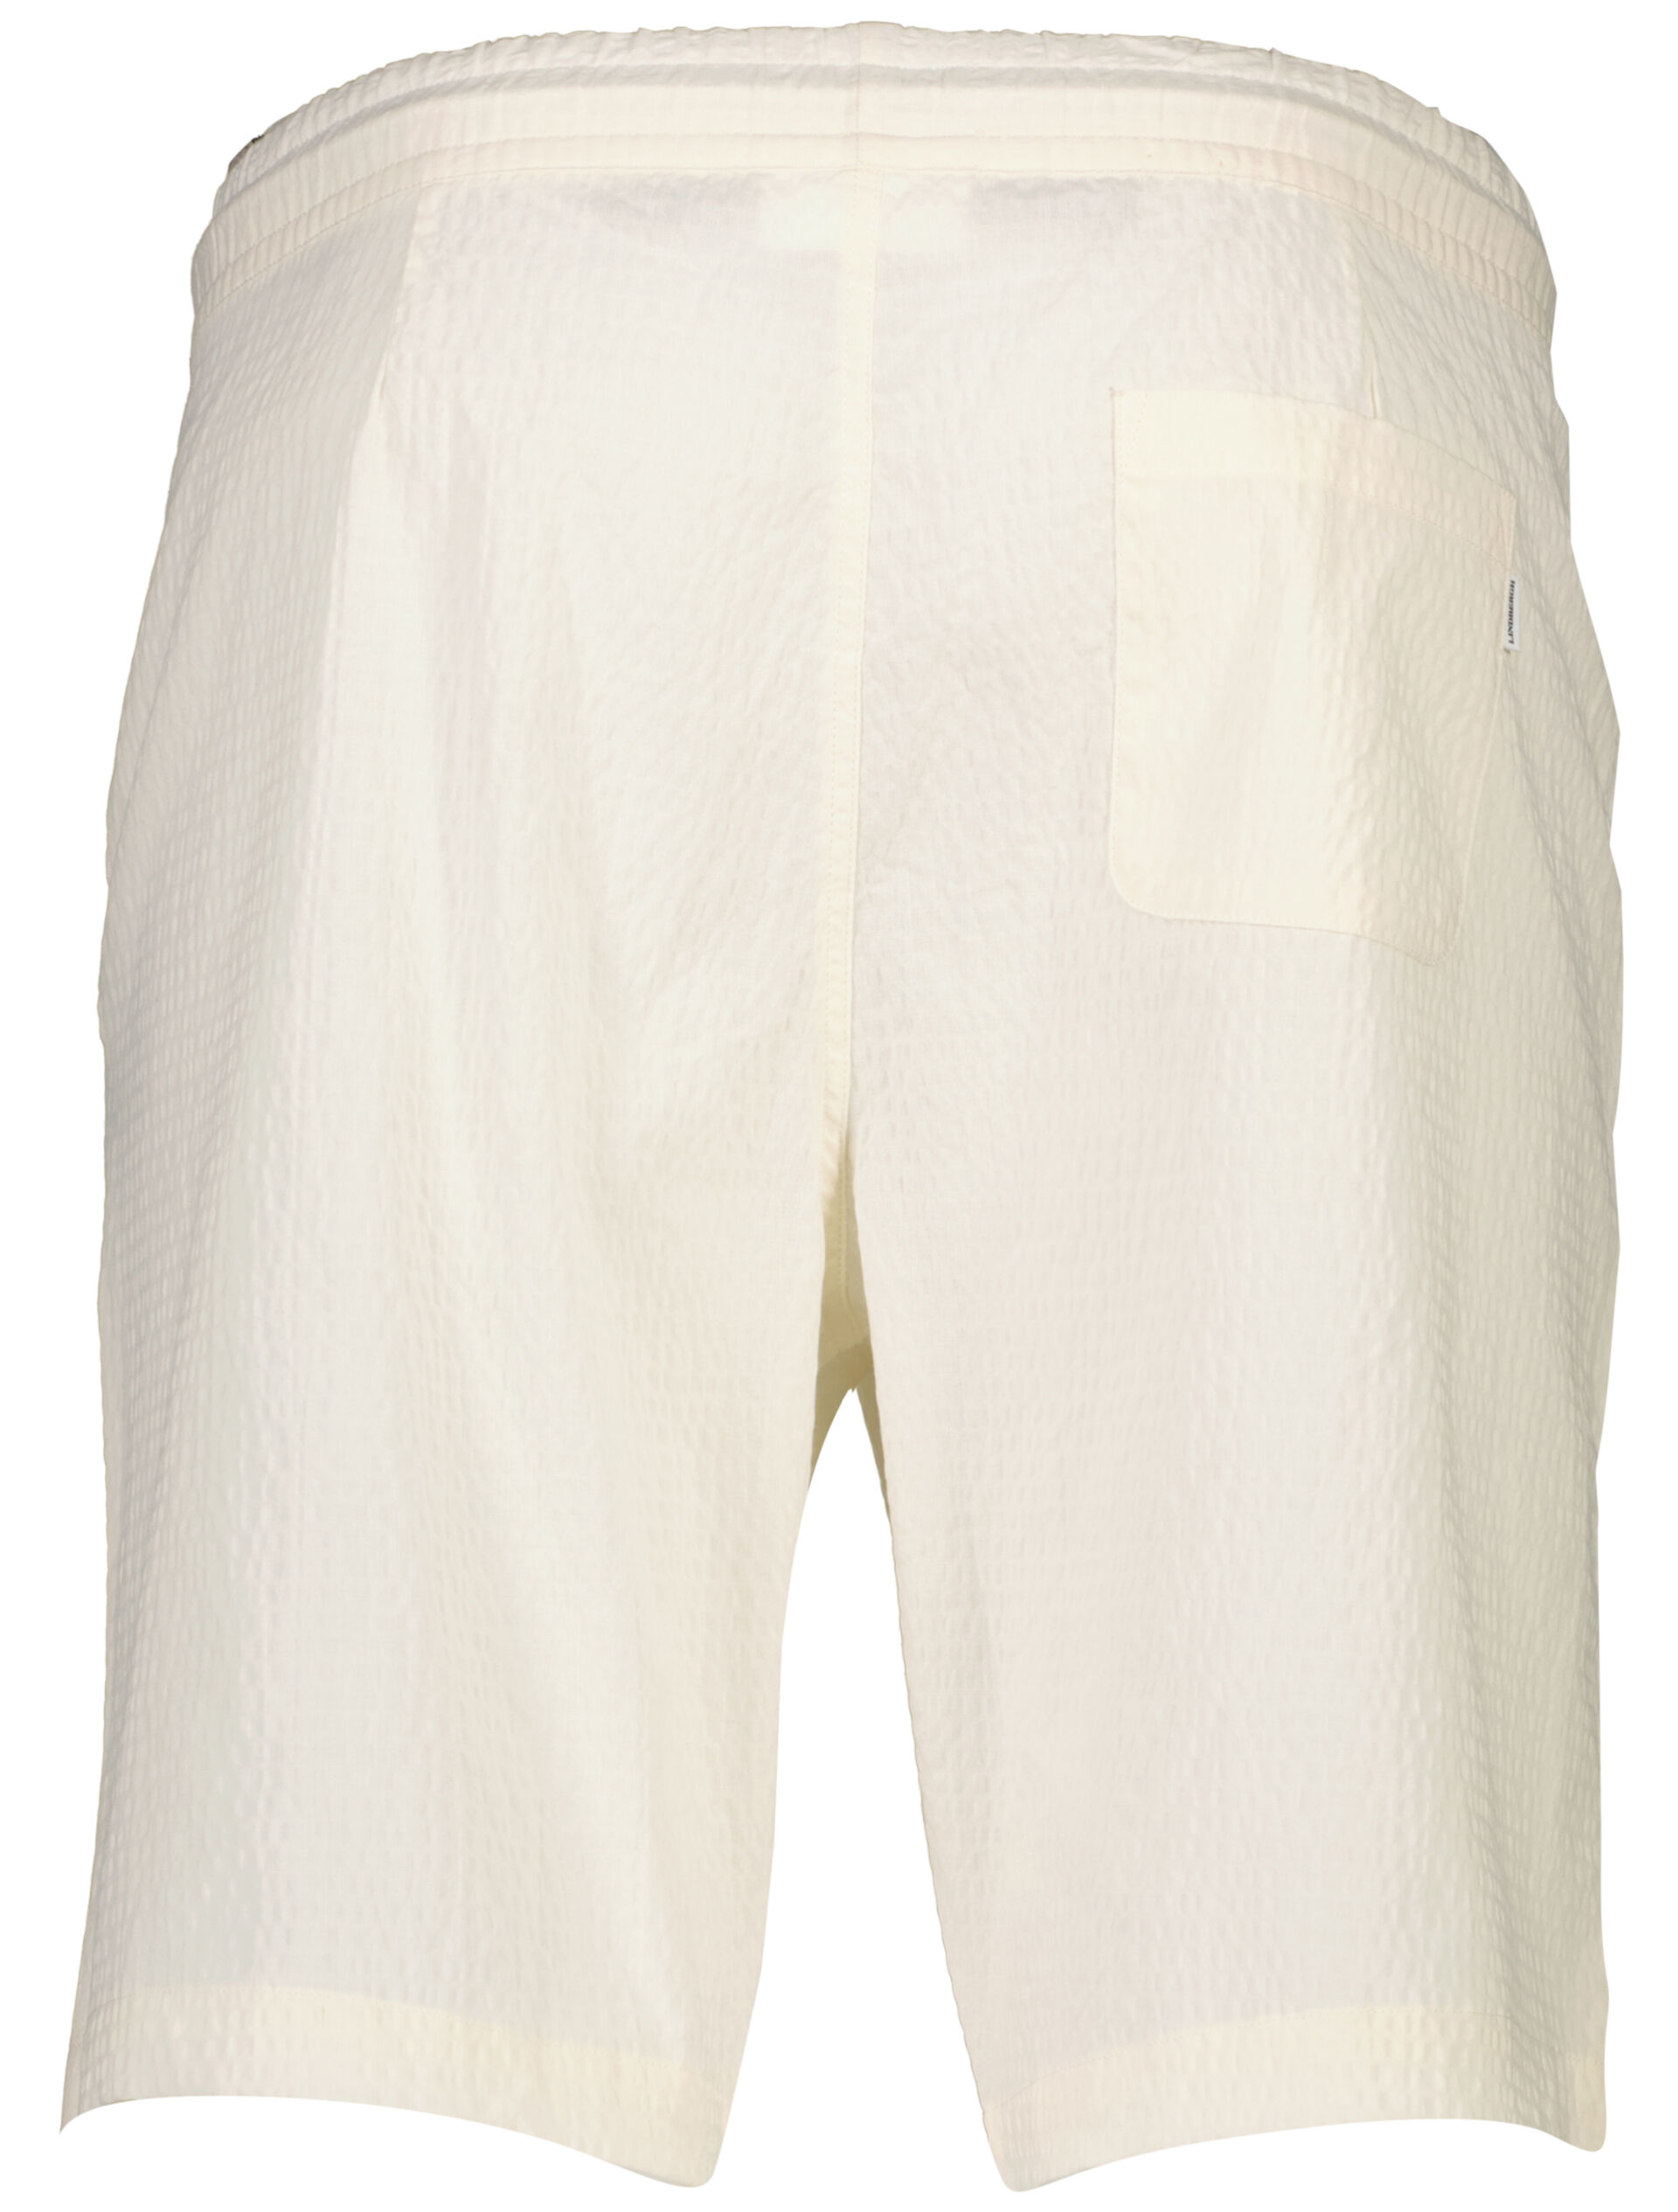 Lindbergh  Casual shorts 30-503575